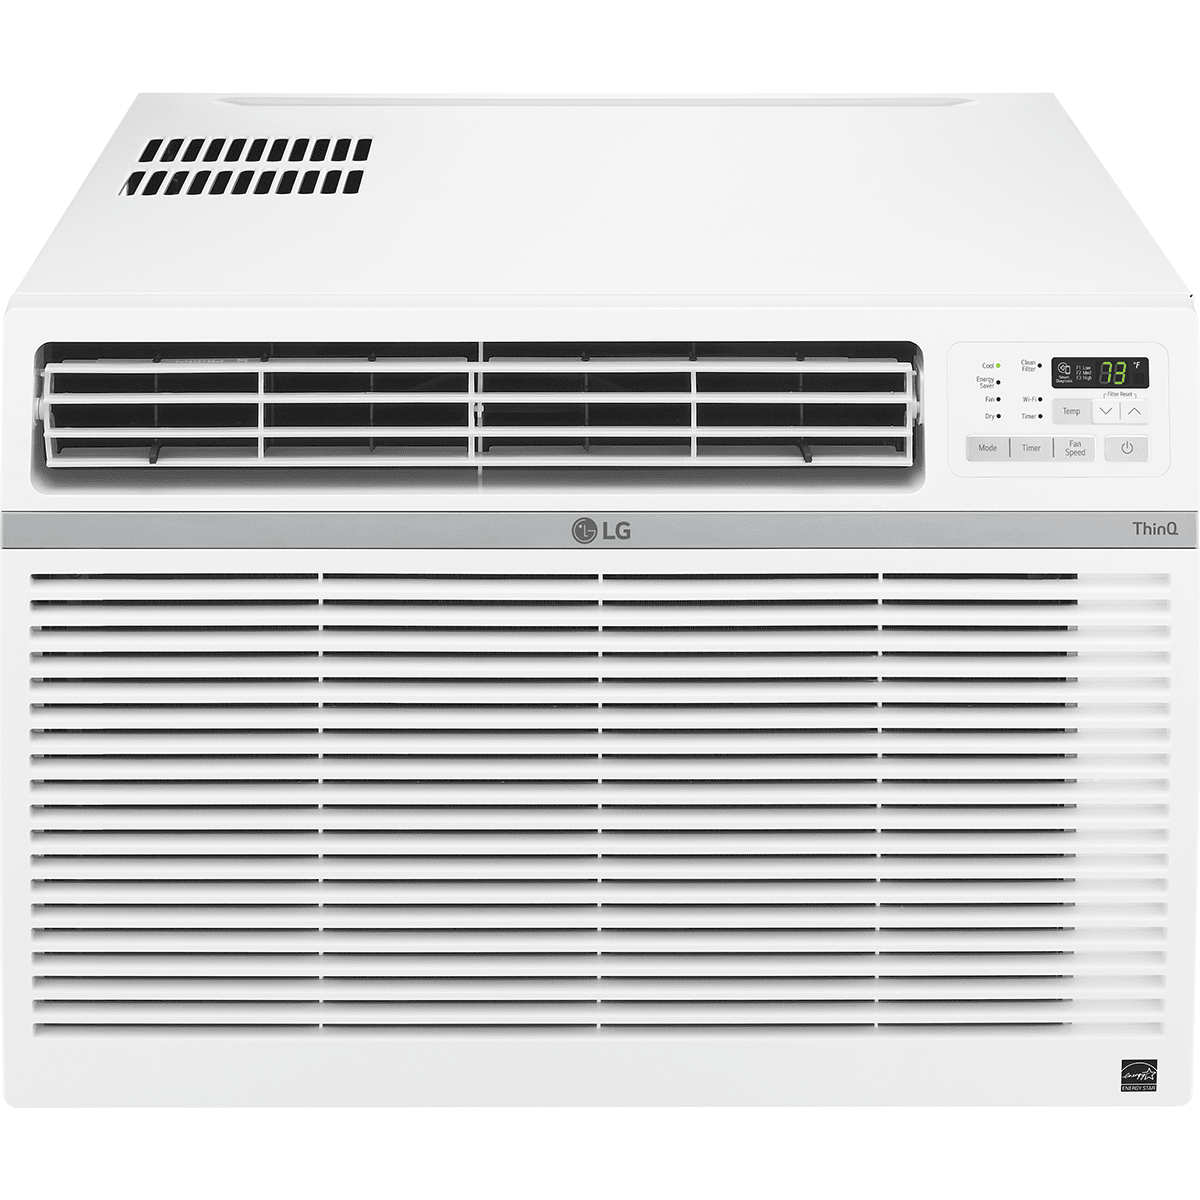 LG 15,000 BTU Smart Wi-Fi Enabled Window Air Conditioner